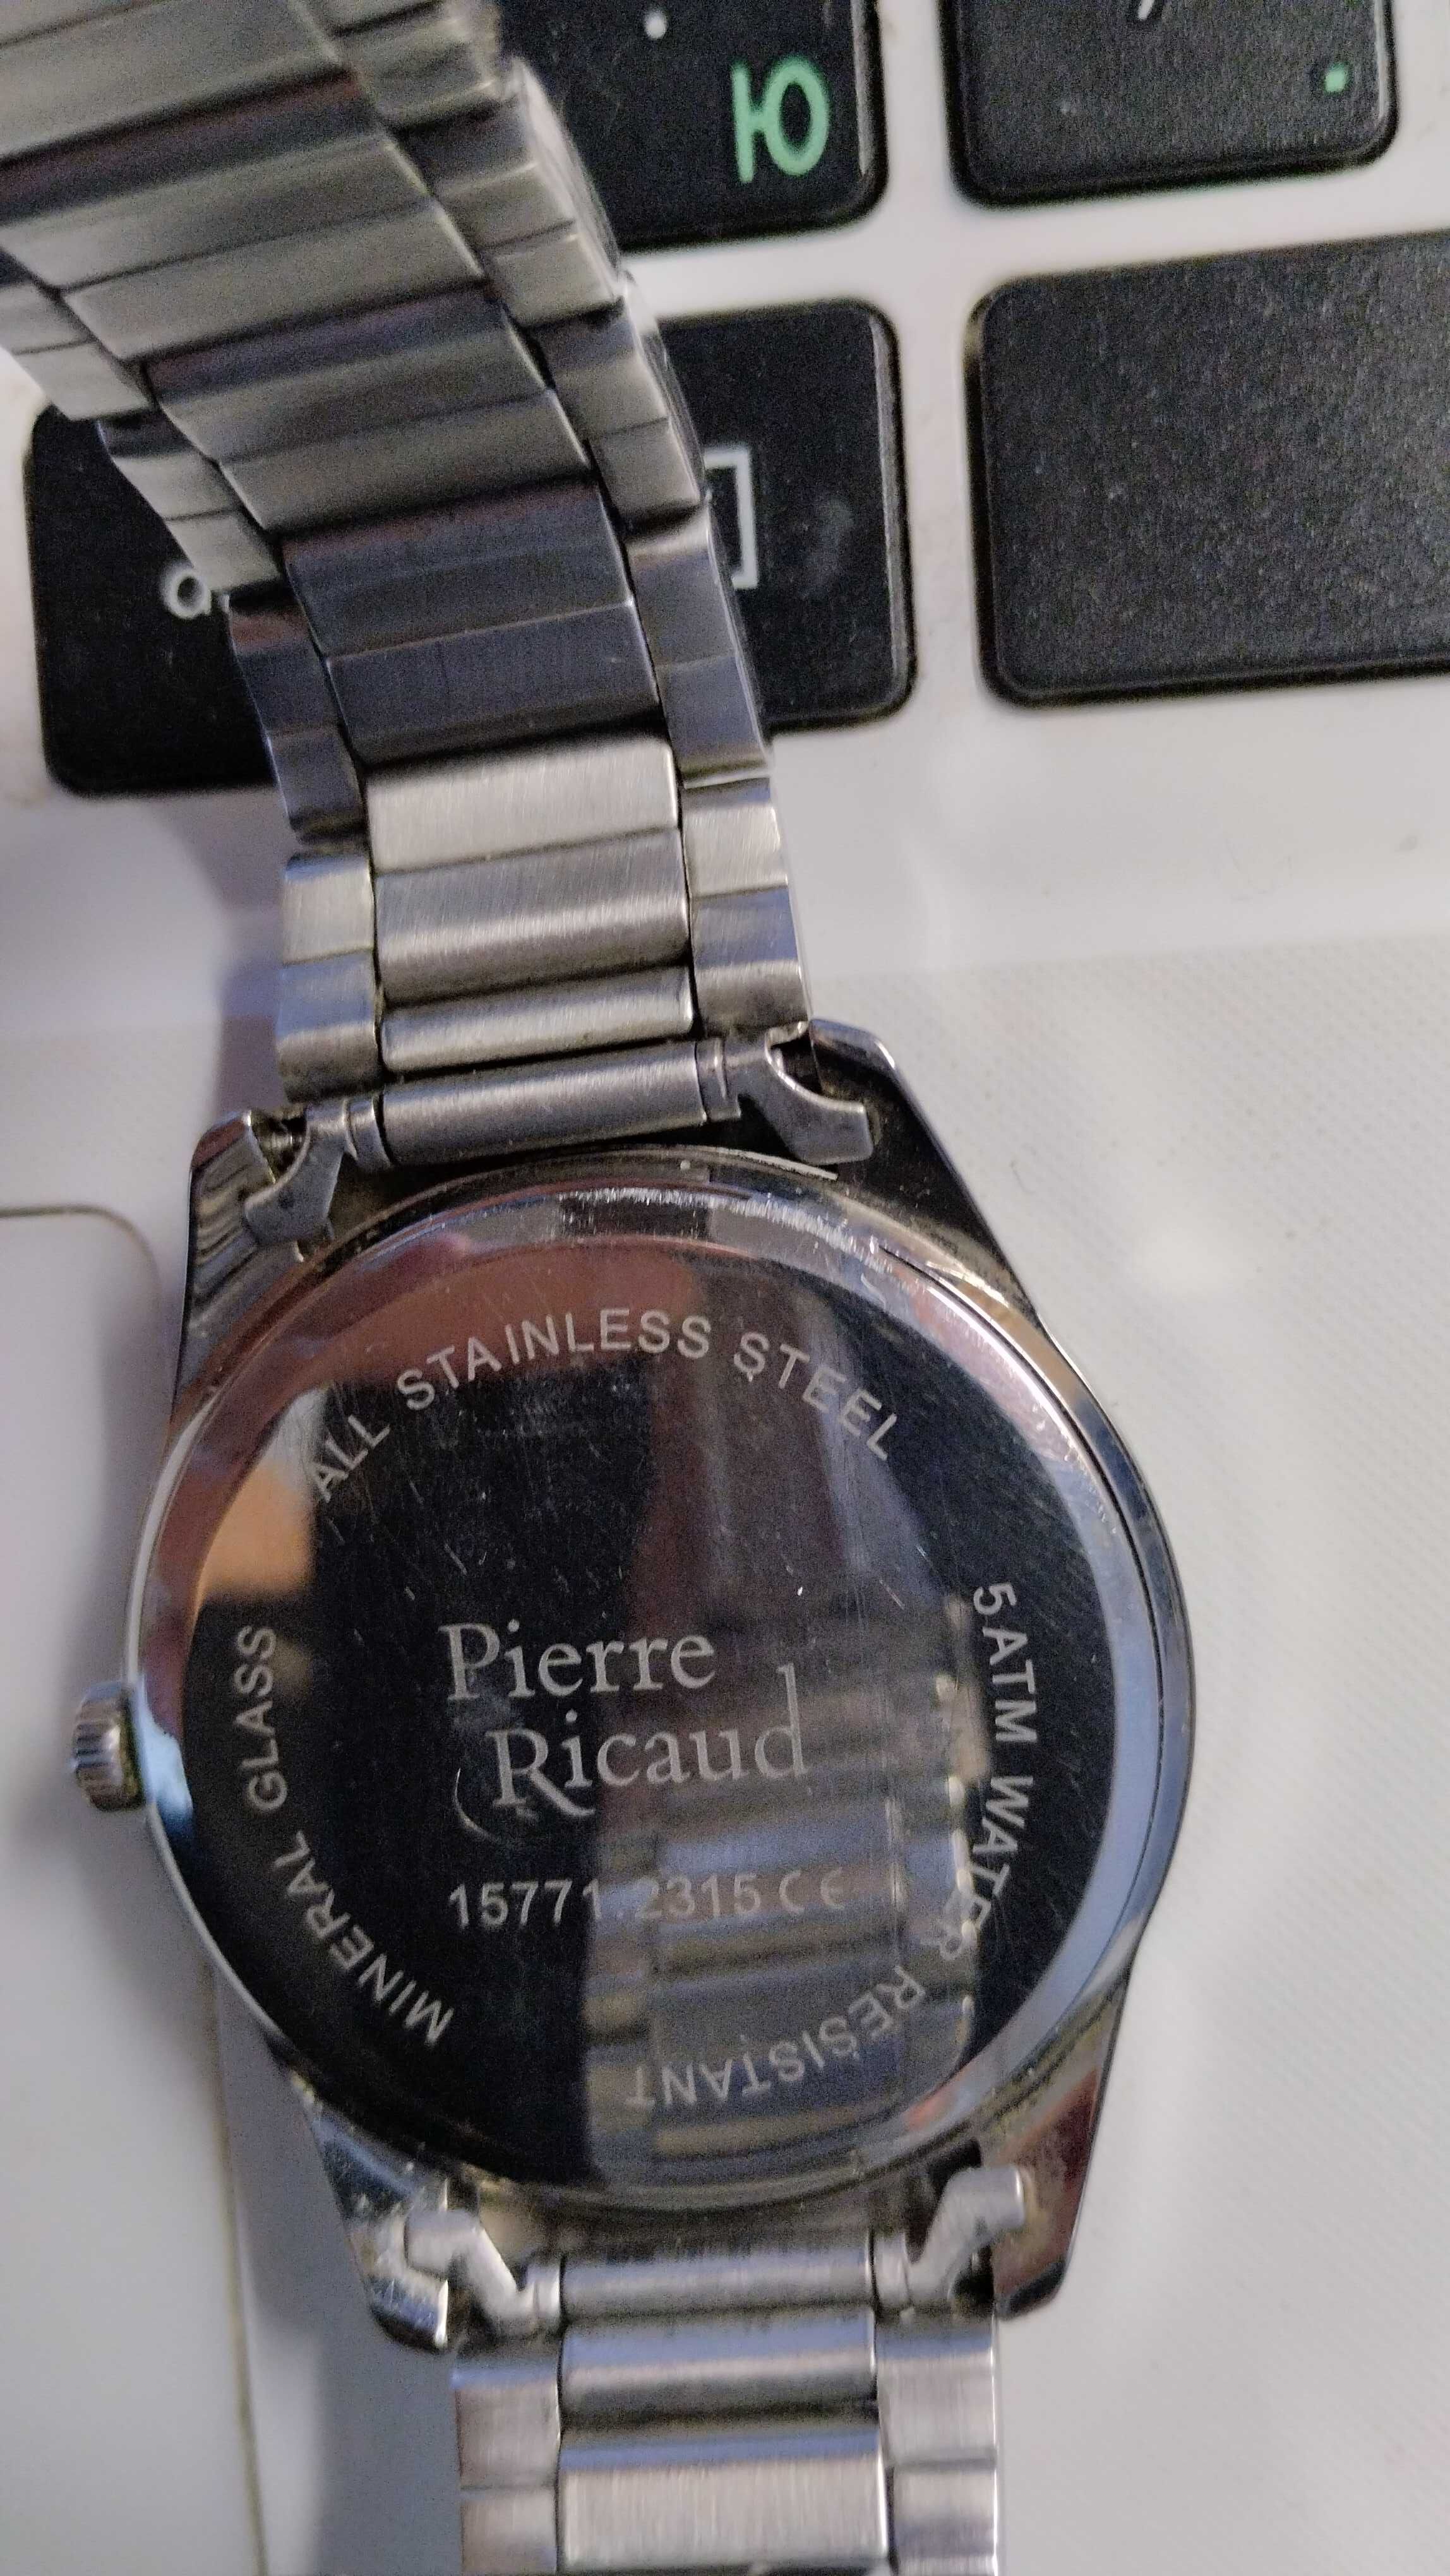 Часы Pierre Ricaud PR 15771.2315 СЄ. Минеральное стекло, до 50м